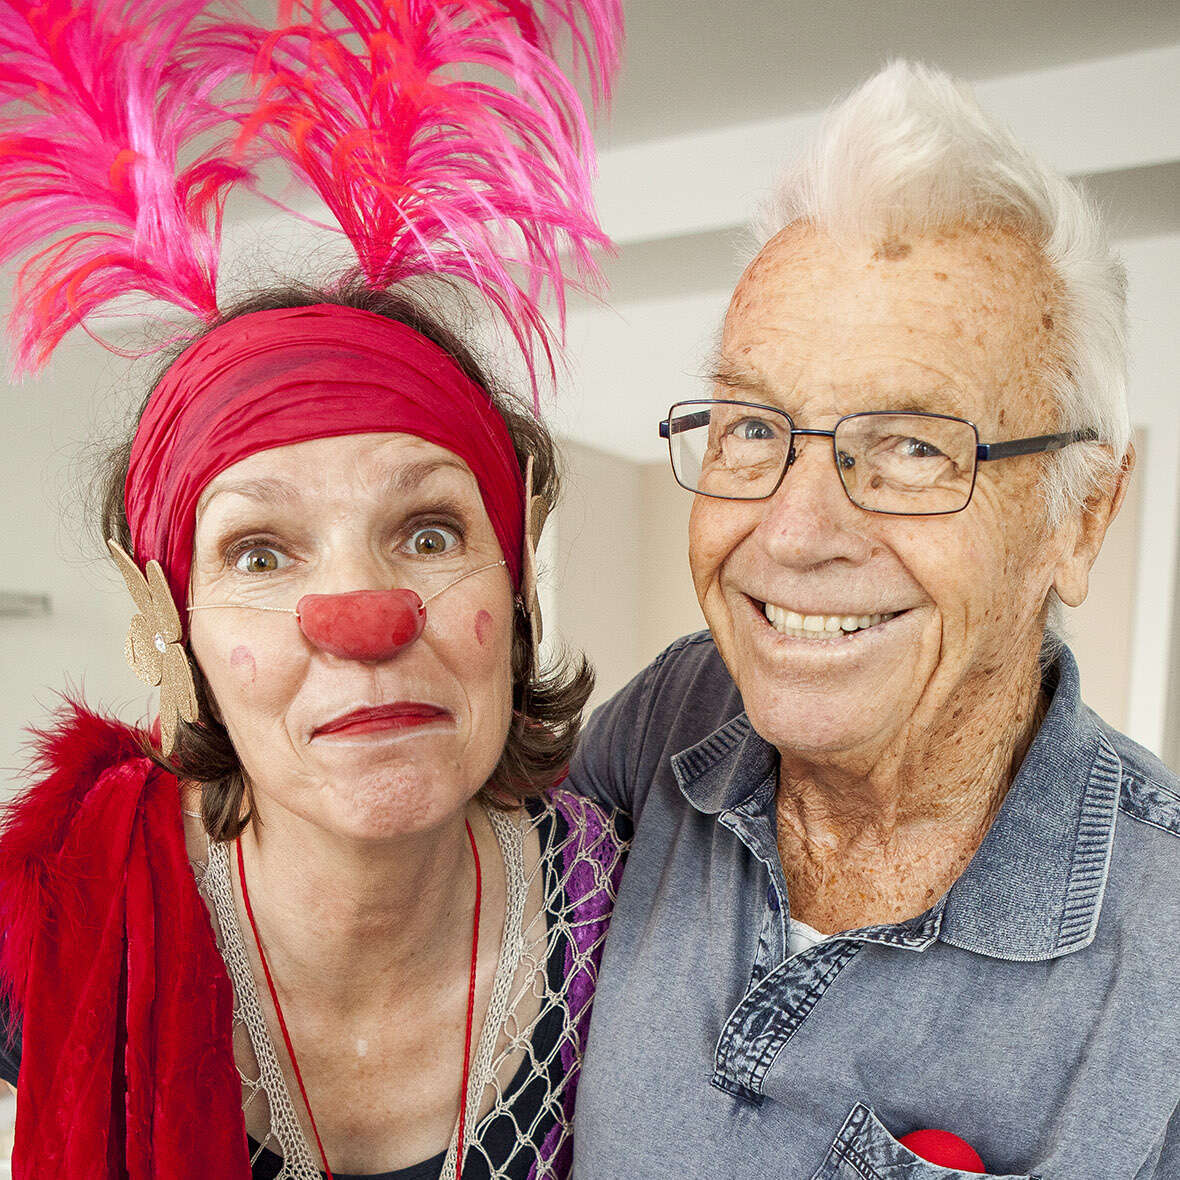 Eine Clownin mit Federn im Haar posiert gemeinsam mit einem Senior. Der Senior lacht herzlich in die Kamera.